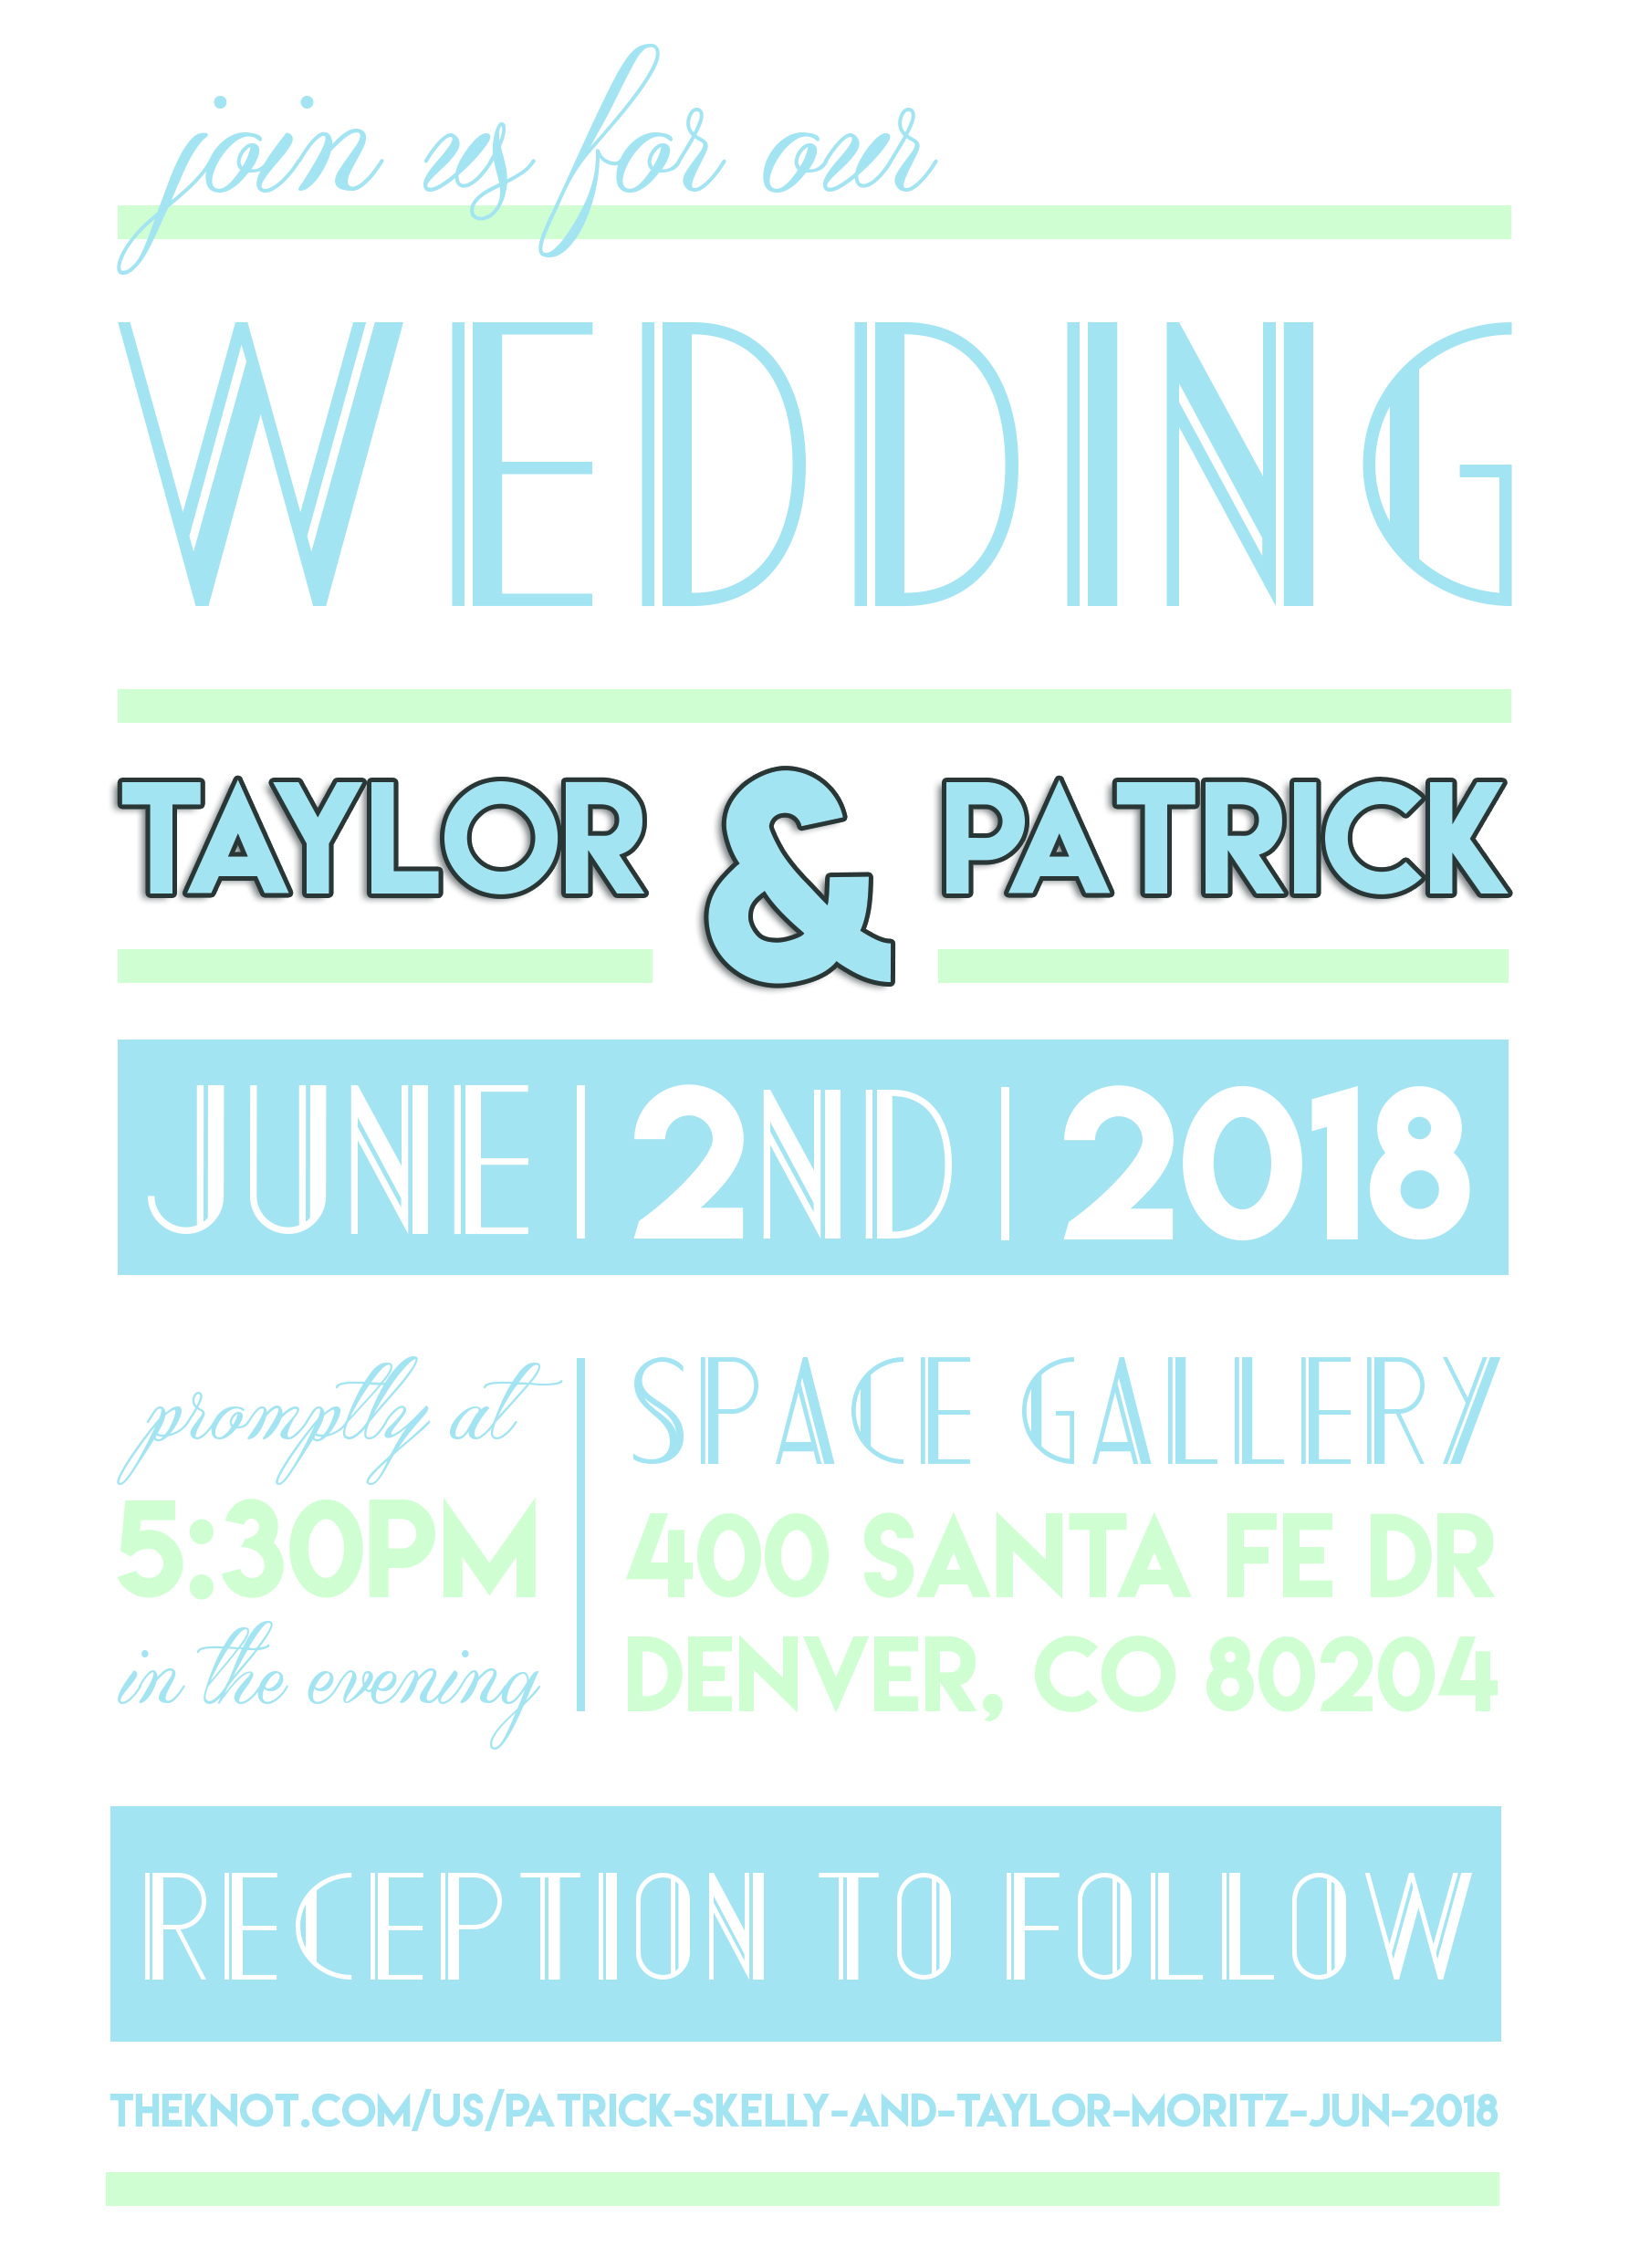 Splart + CB Wedding Invite Draft 1.jpg